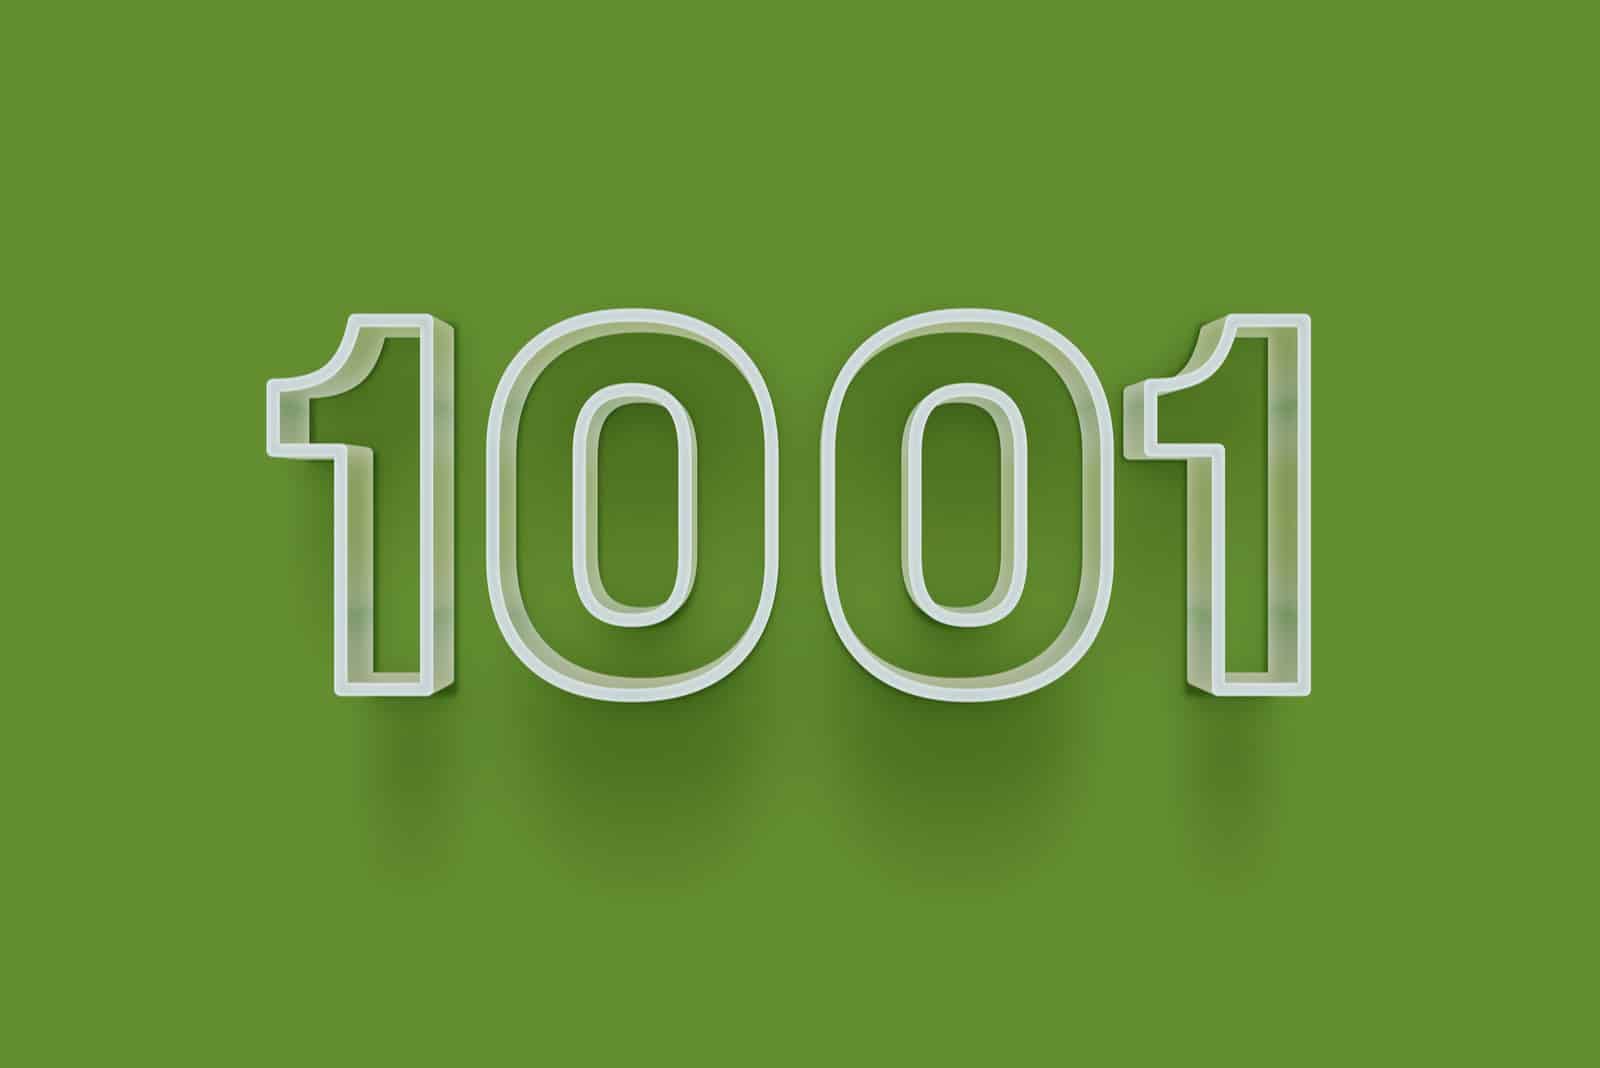 Nummer 1001 auf grünem Hintergrund